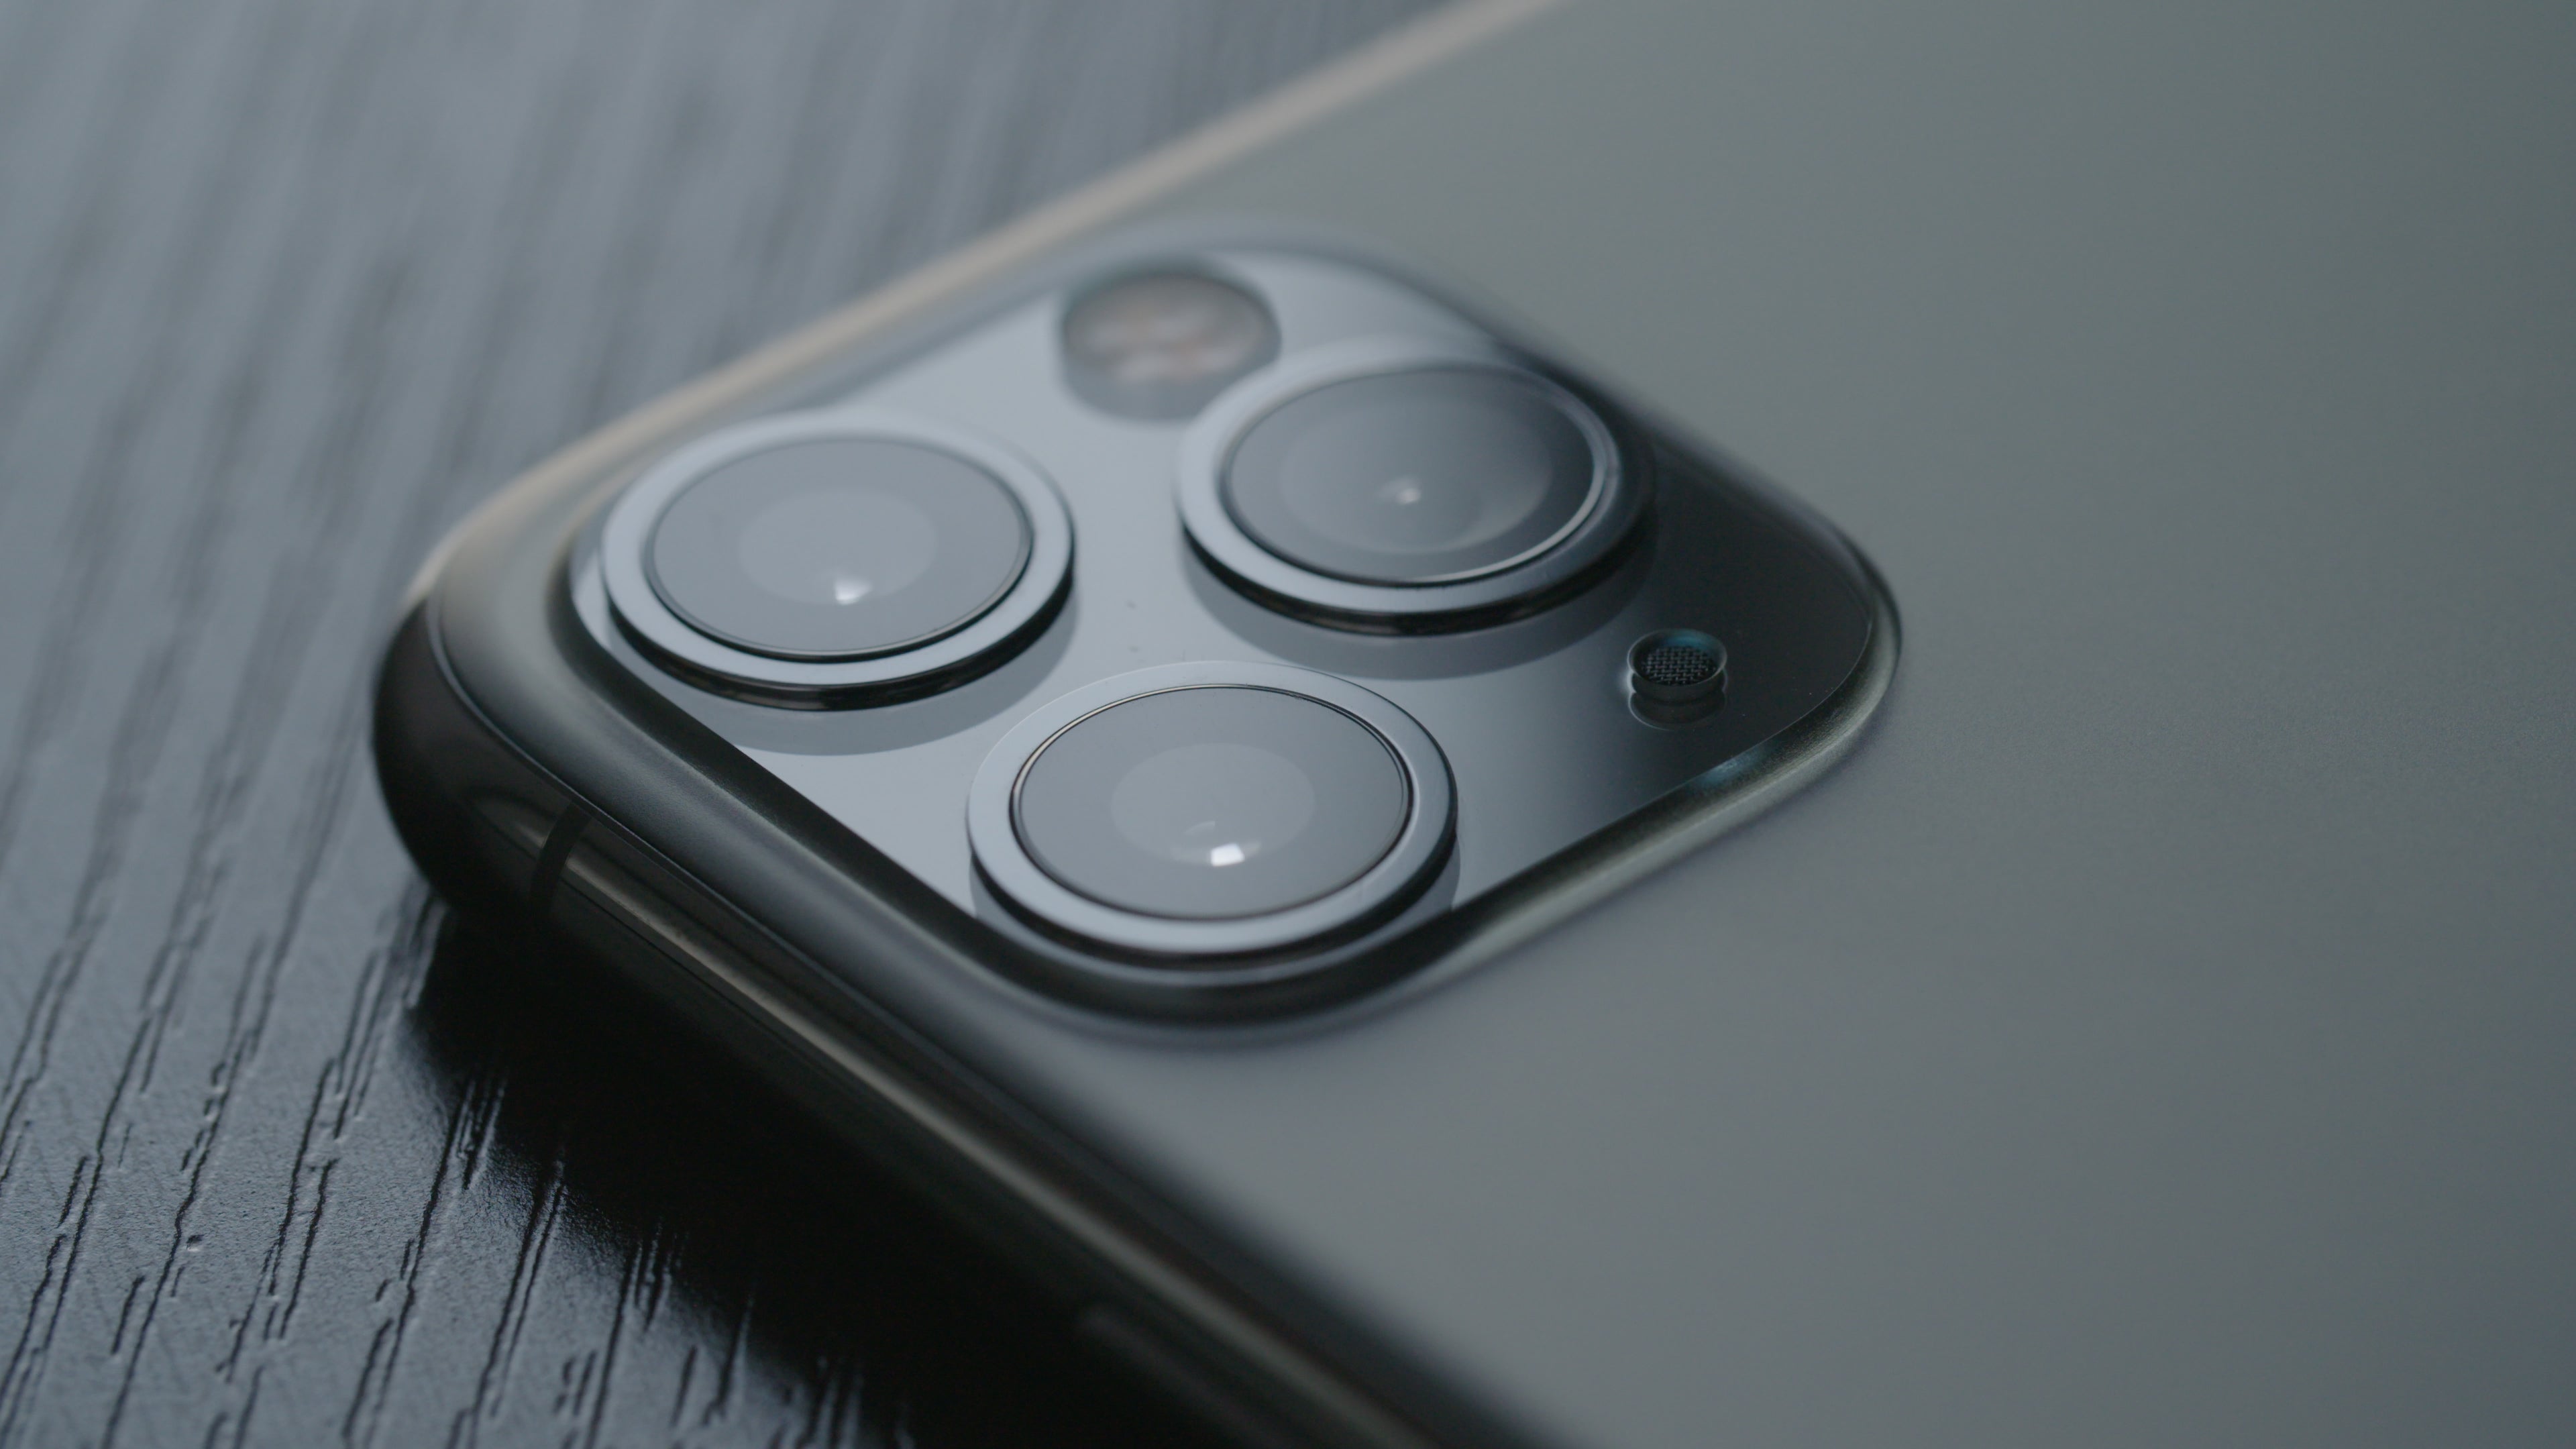 لقطة مقرّبة لمجموعة عدسات كاميرا iPhone 11 Pro.